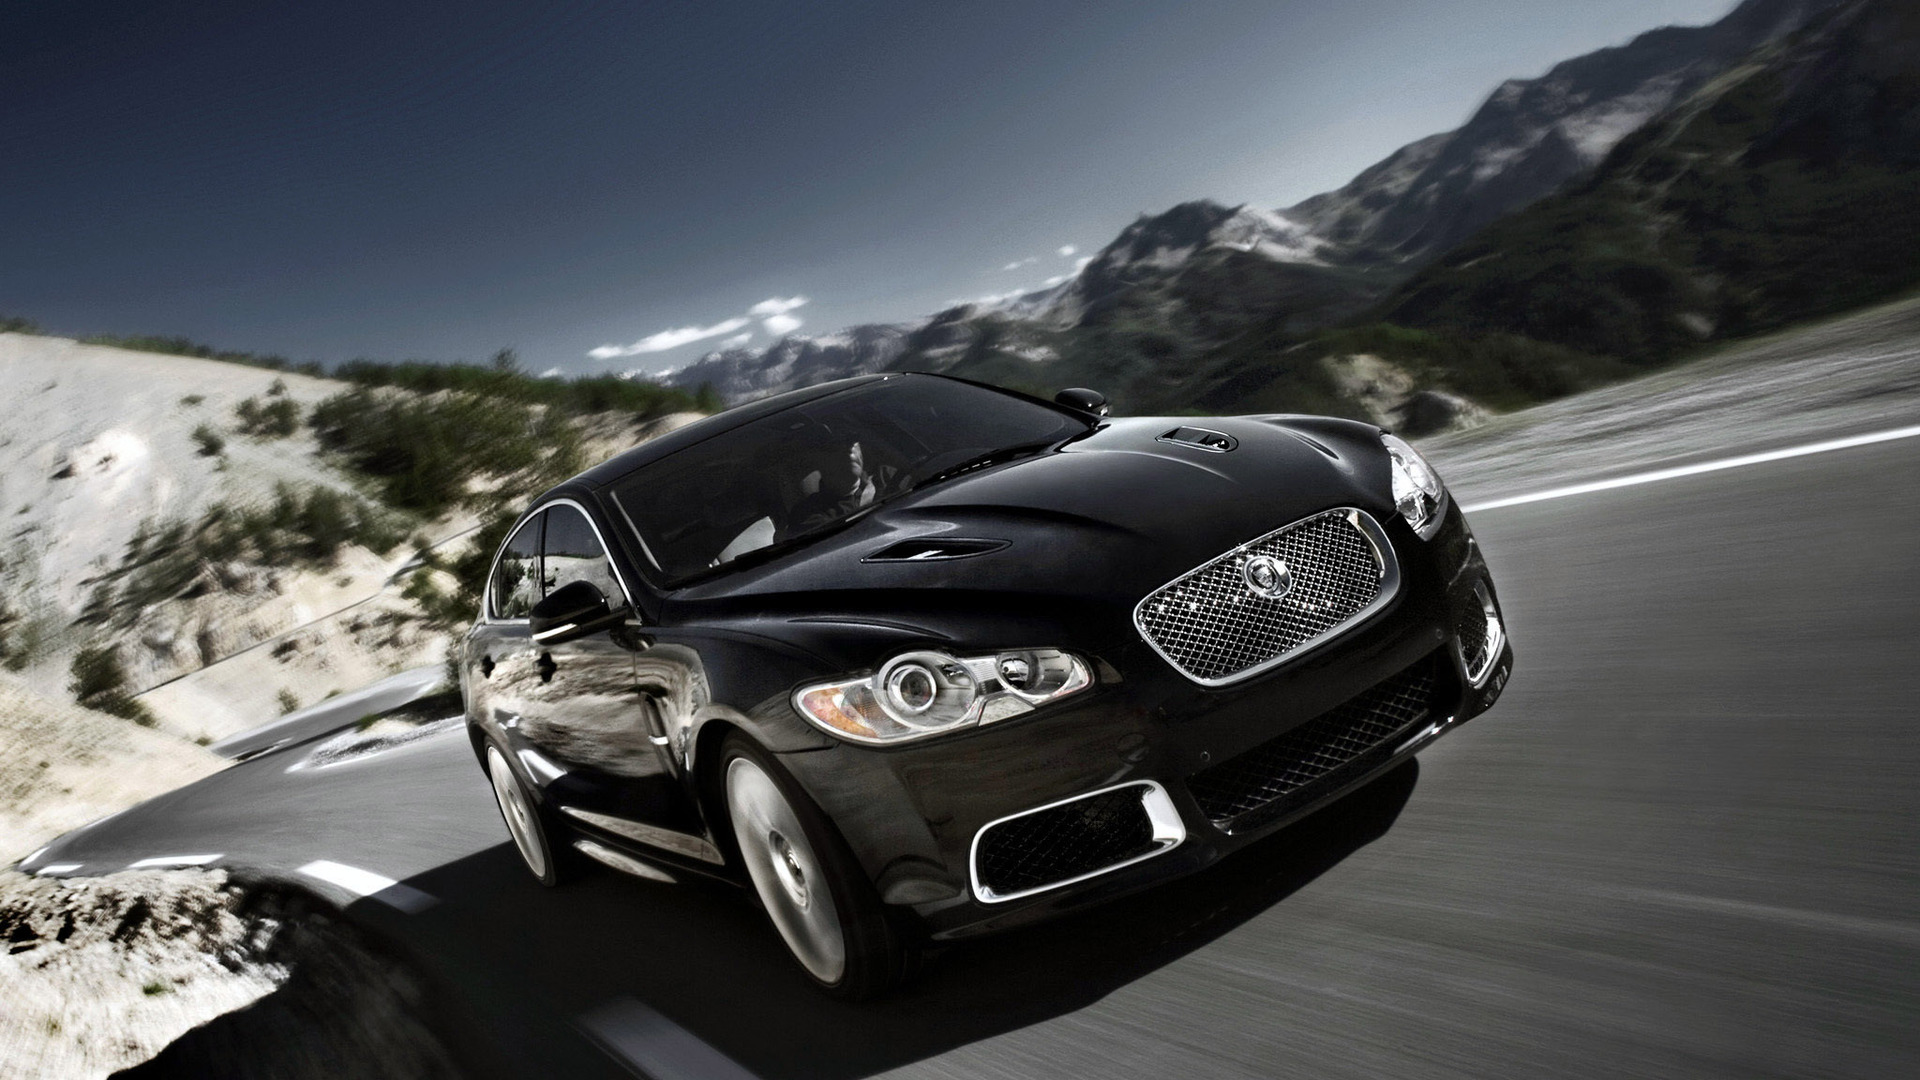 voiture jaguar noire fonds d'écran hd,véhicule terrestre,véhicule,véhicule de luxe,voiture,voiture de luxe personnelle